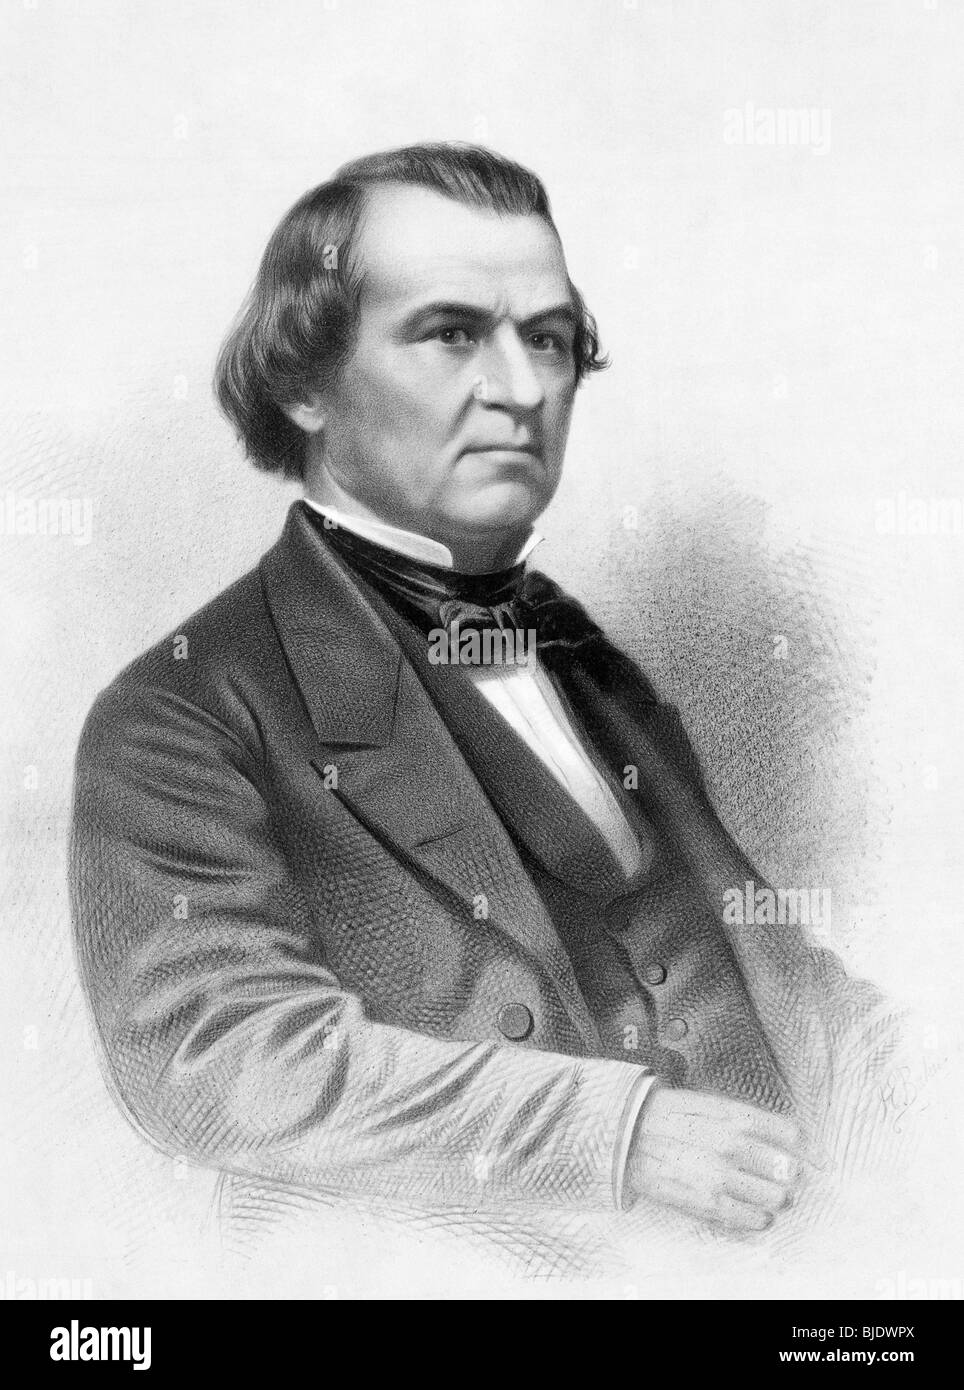 Porträt c1865 von Andrew Johnson - war Johnson (1808-1875), der 17. US-Präsident (1865-1869) und der erste angeklagt werden. Stockfoto